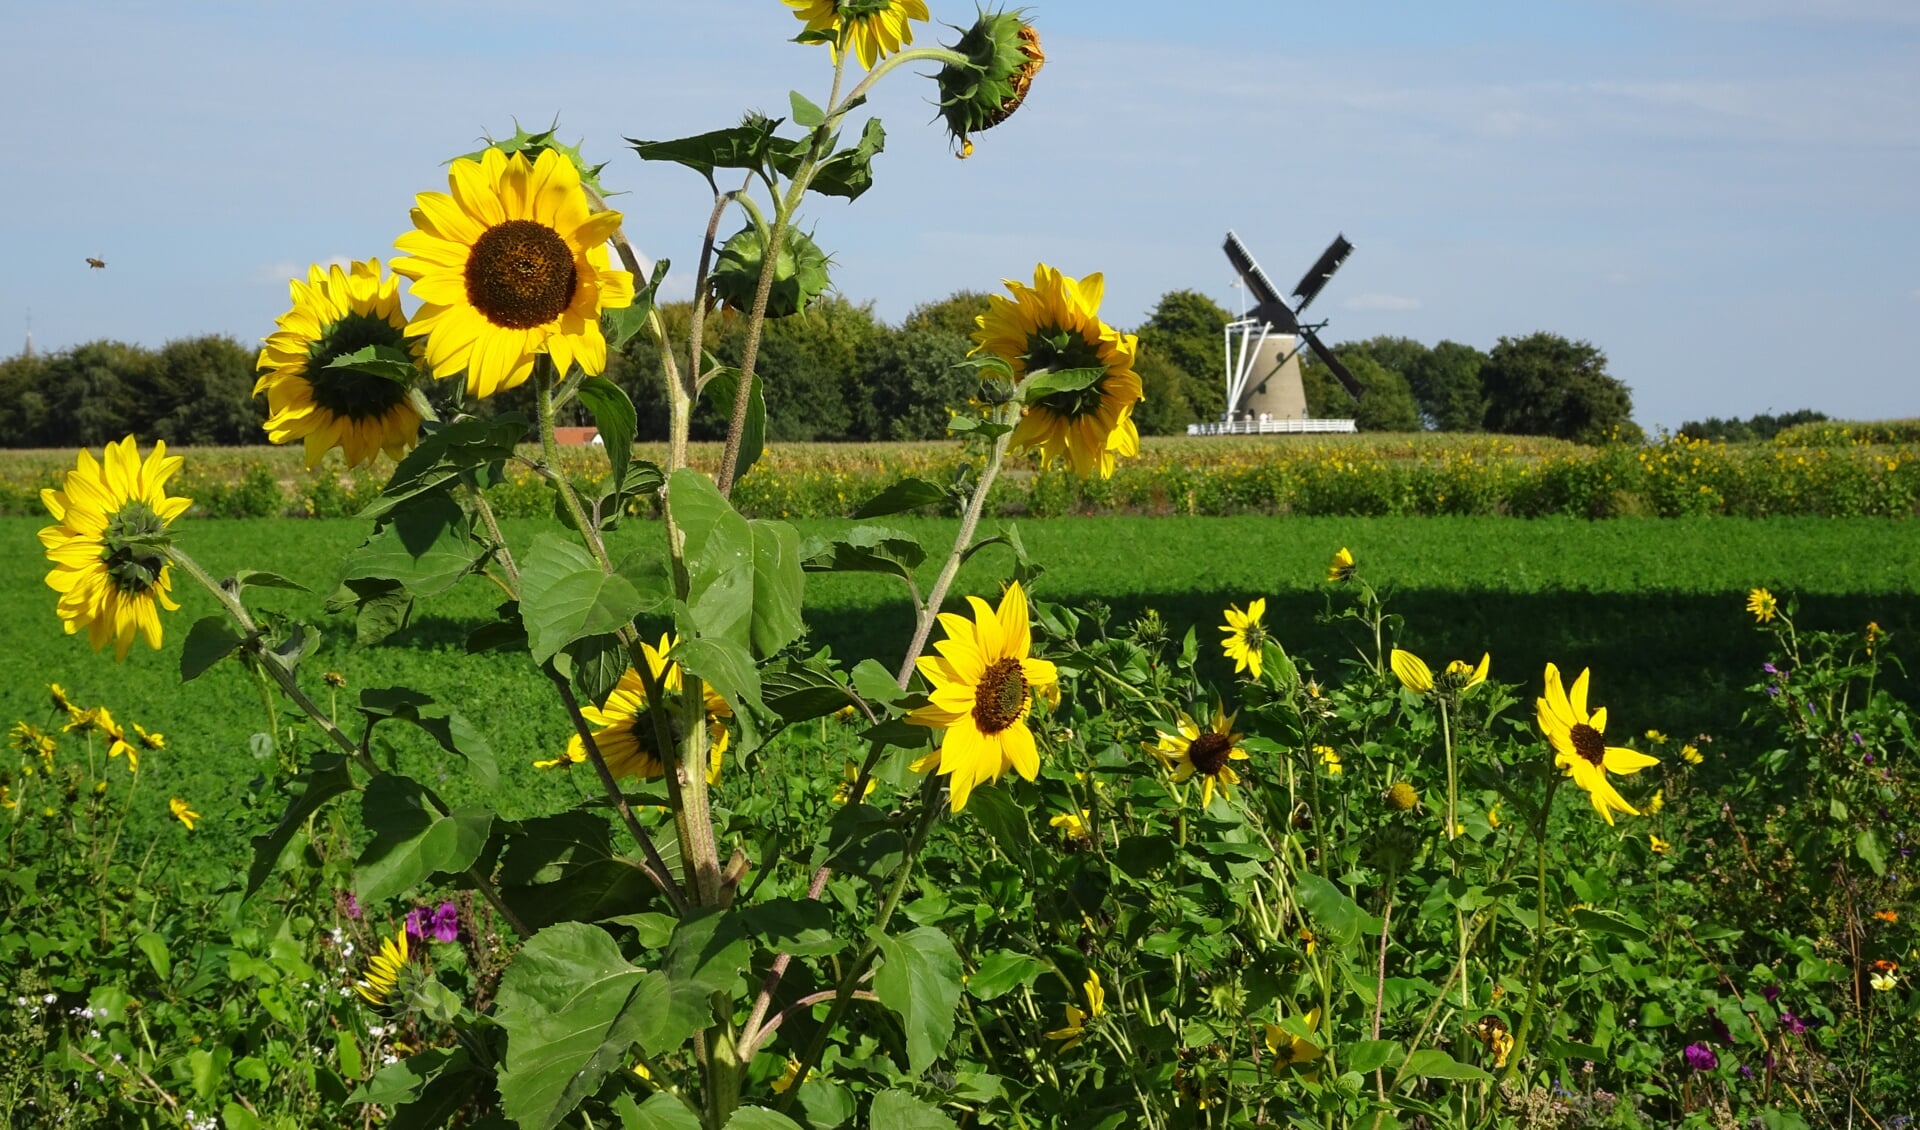 Een lint van drie kilometer aan zonnebloemen is de insteek van Engtuin.